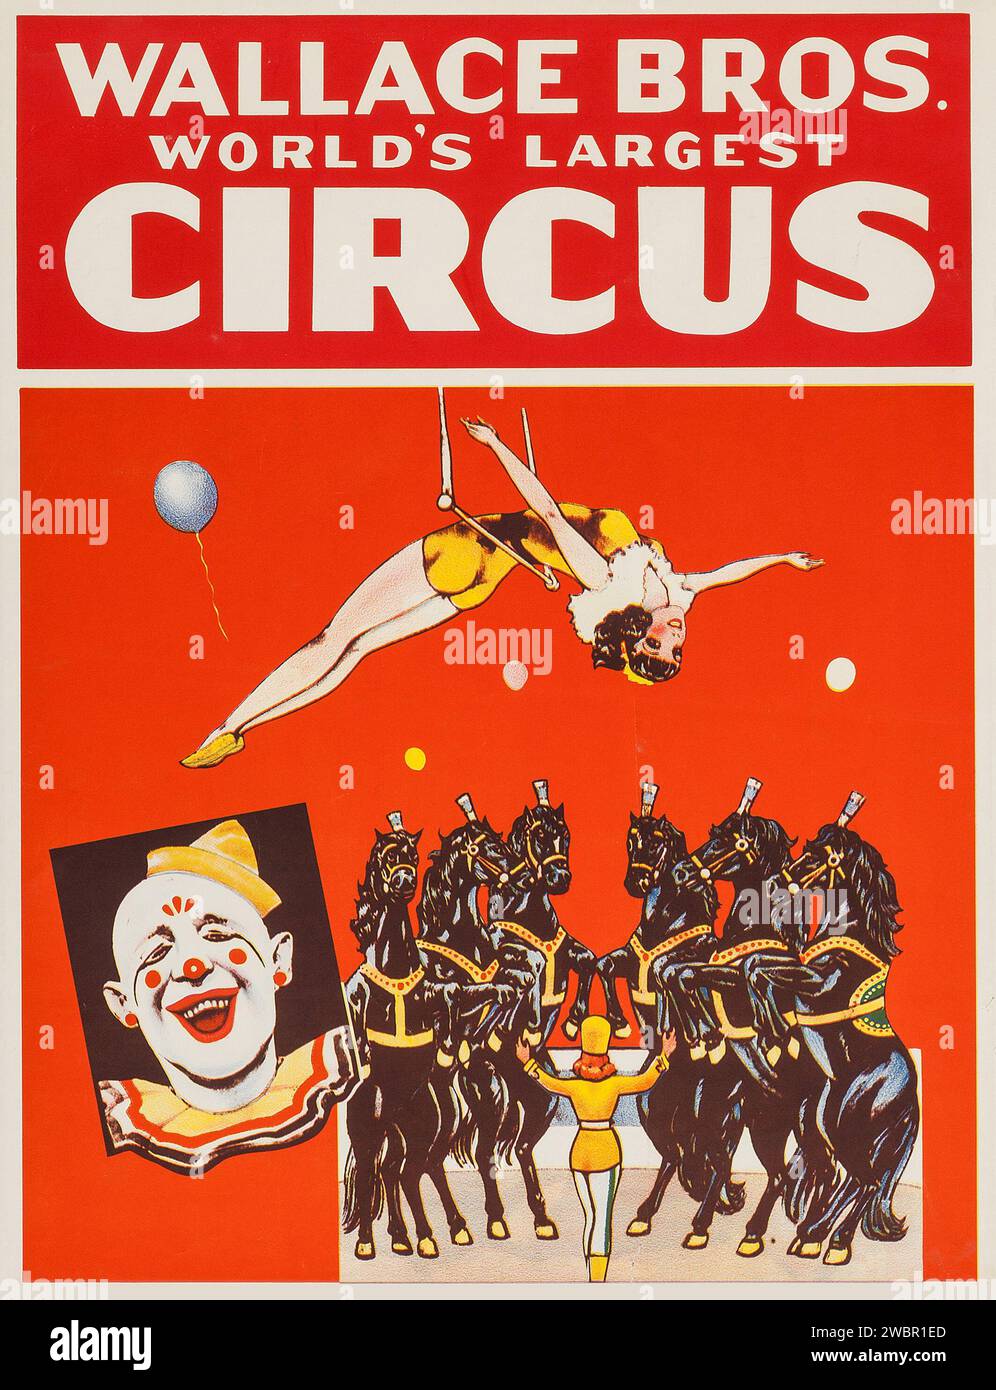 Wallace Brothers Circus Poster (années 1950) avec des artistes de cirque, des chevaux et un clown Banque D'Images